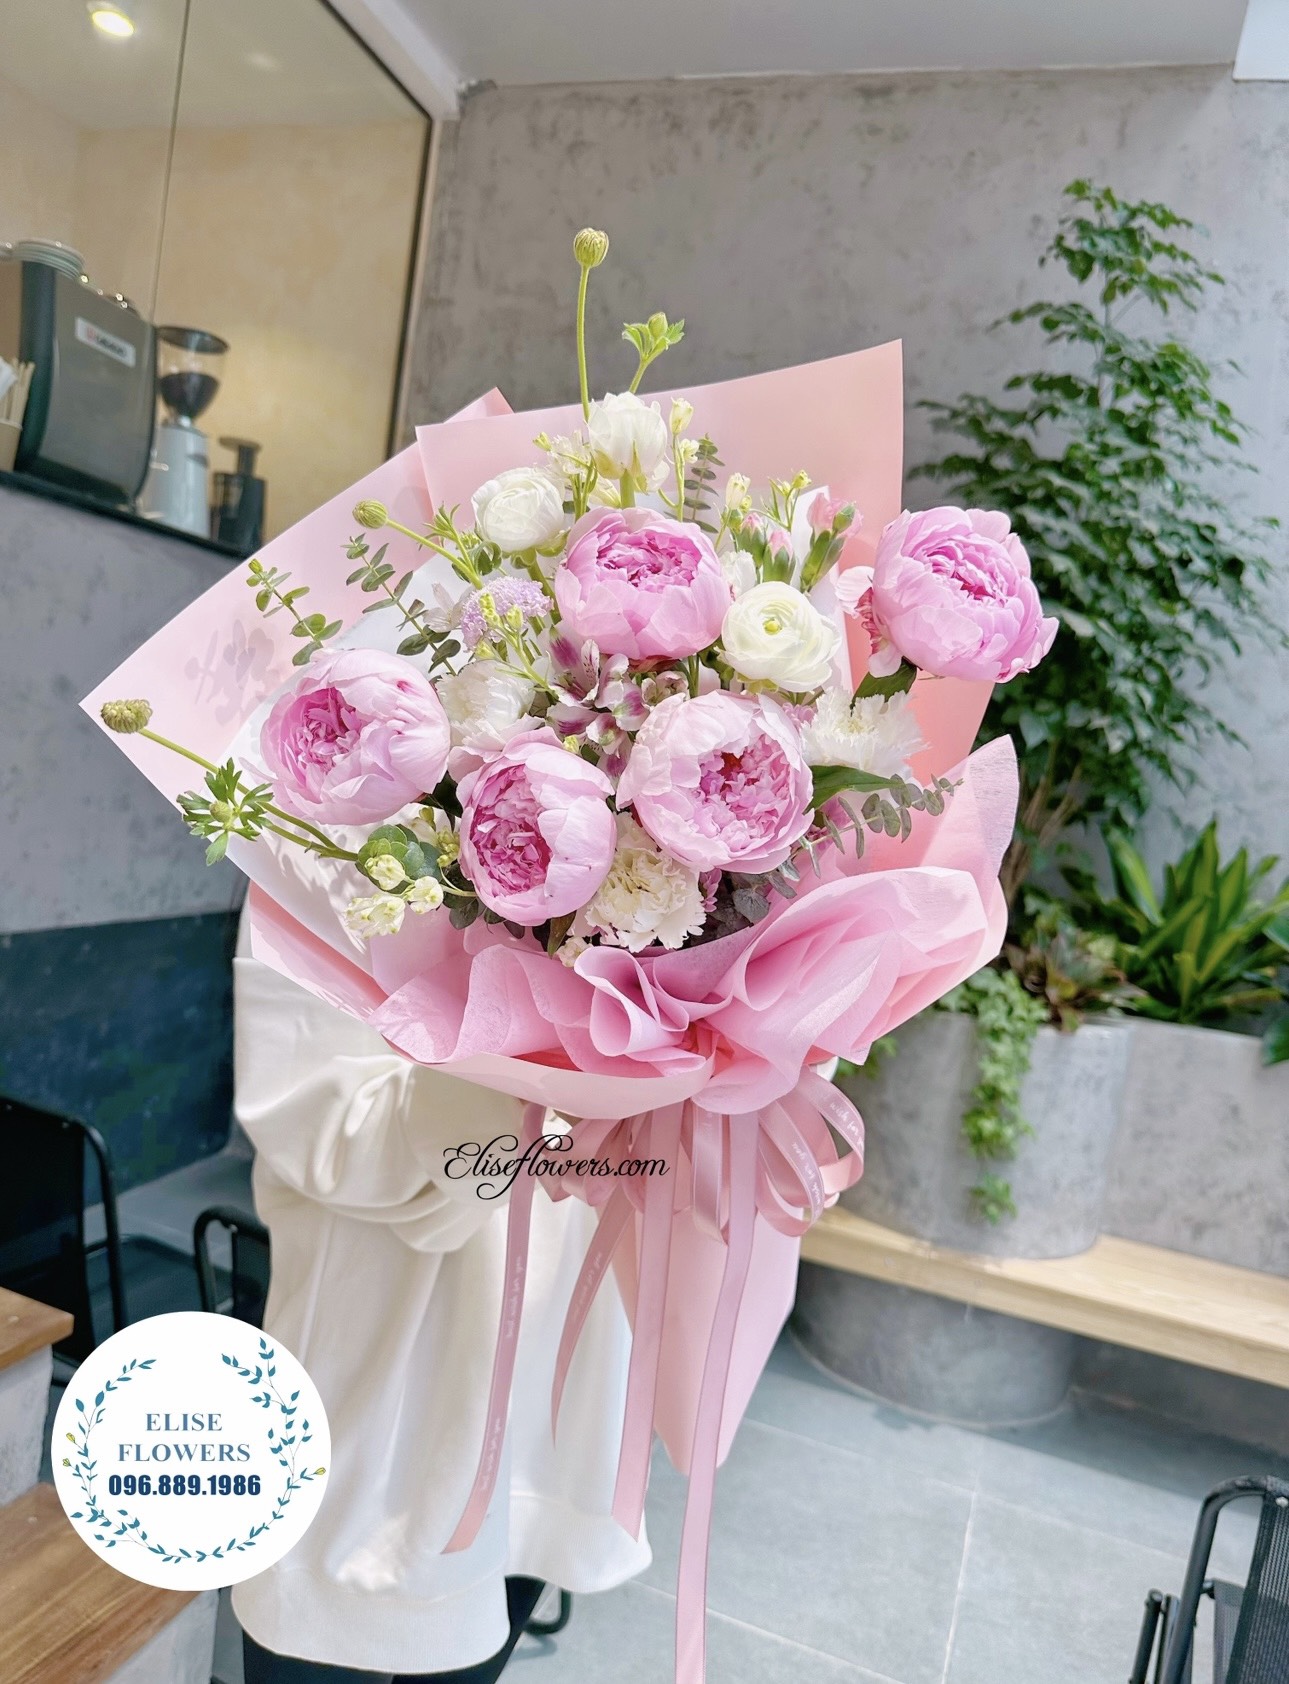 Bó hoa mẫu đơn đẹp ở Hà Nội. Đặt mua bó hoa mẫu đơn màu hồng ở Hà Nội.